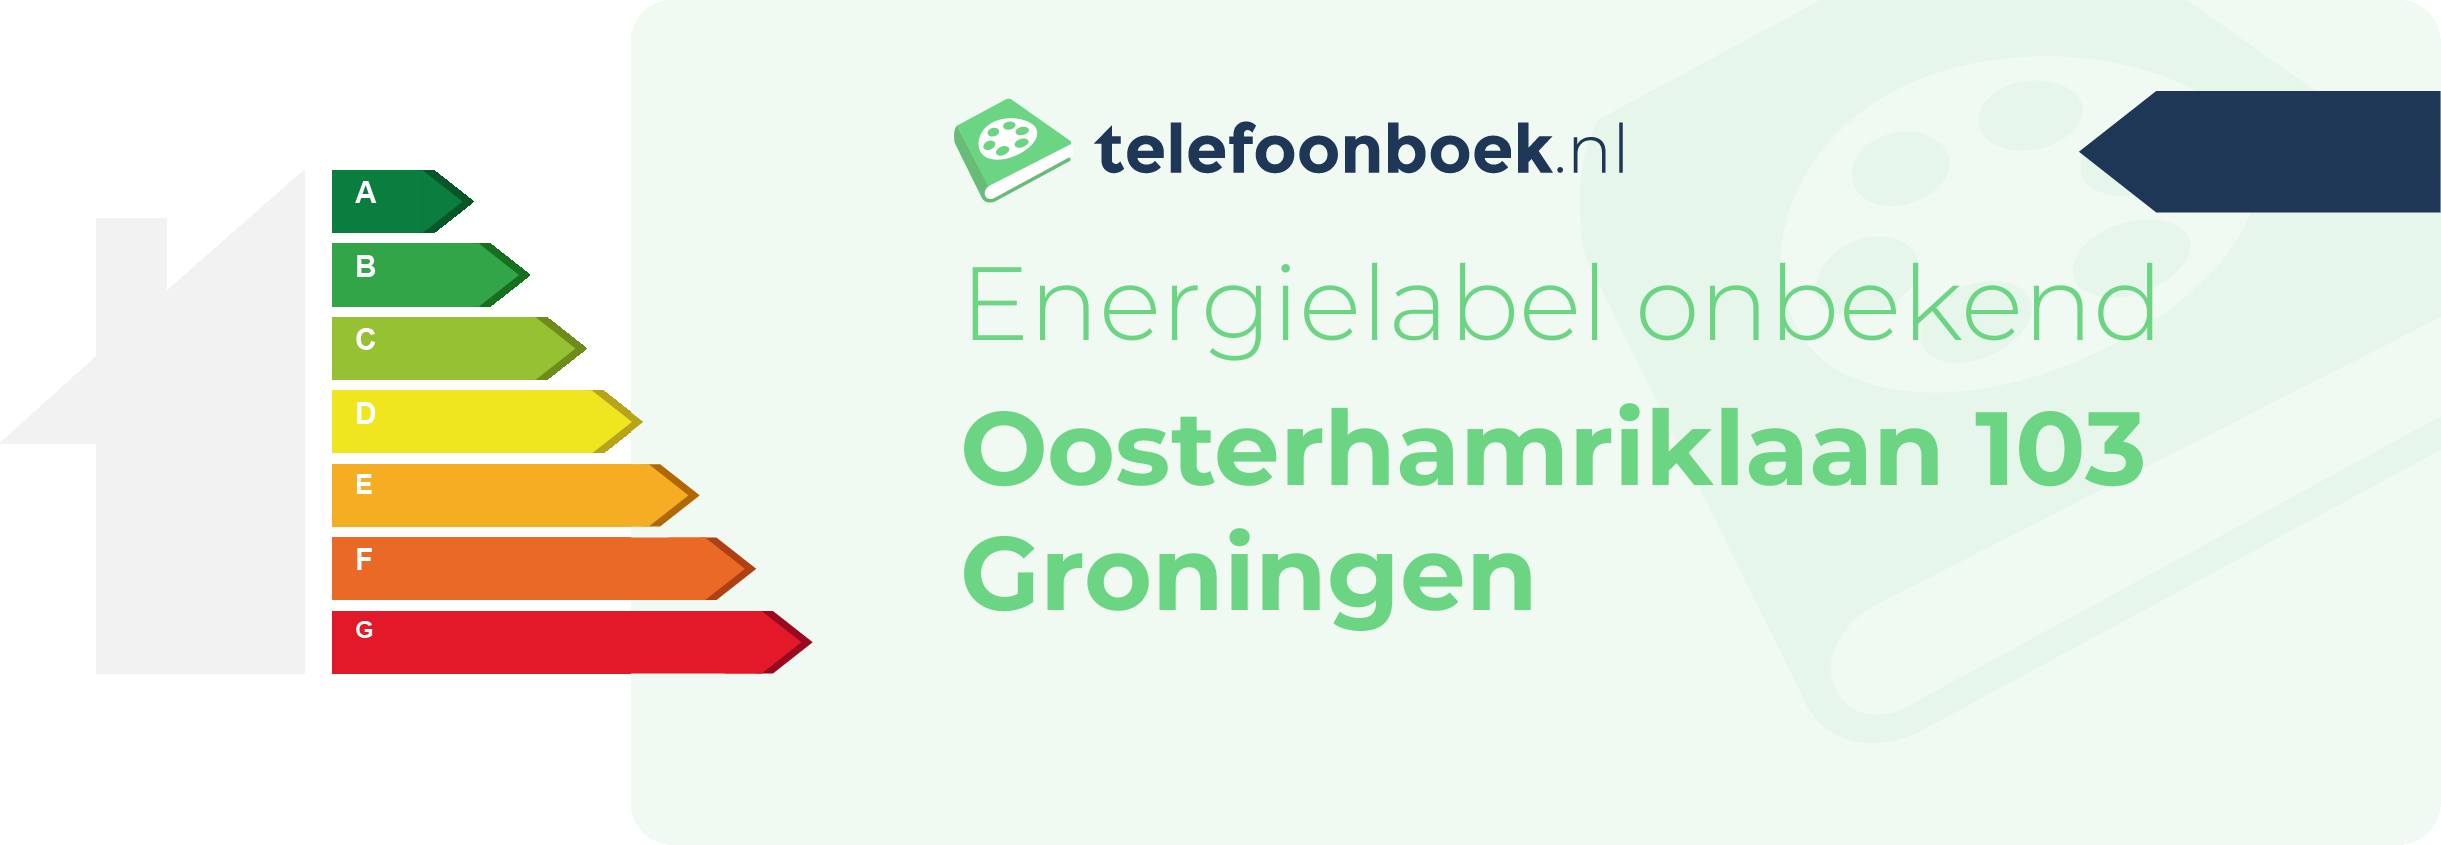 Energielabel Oosterhamriklaan 103 Groningen